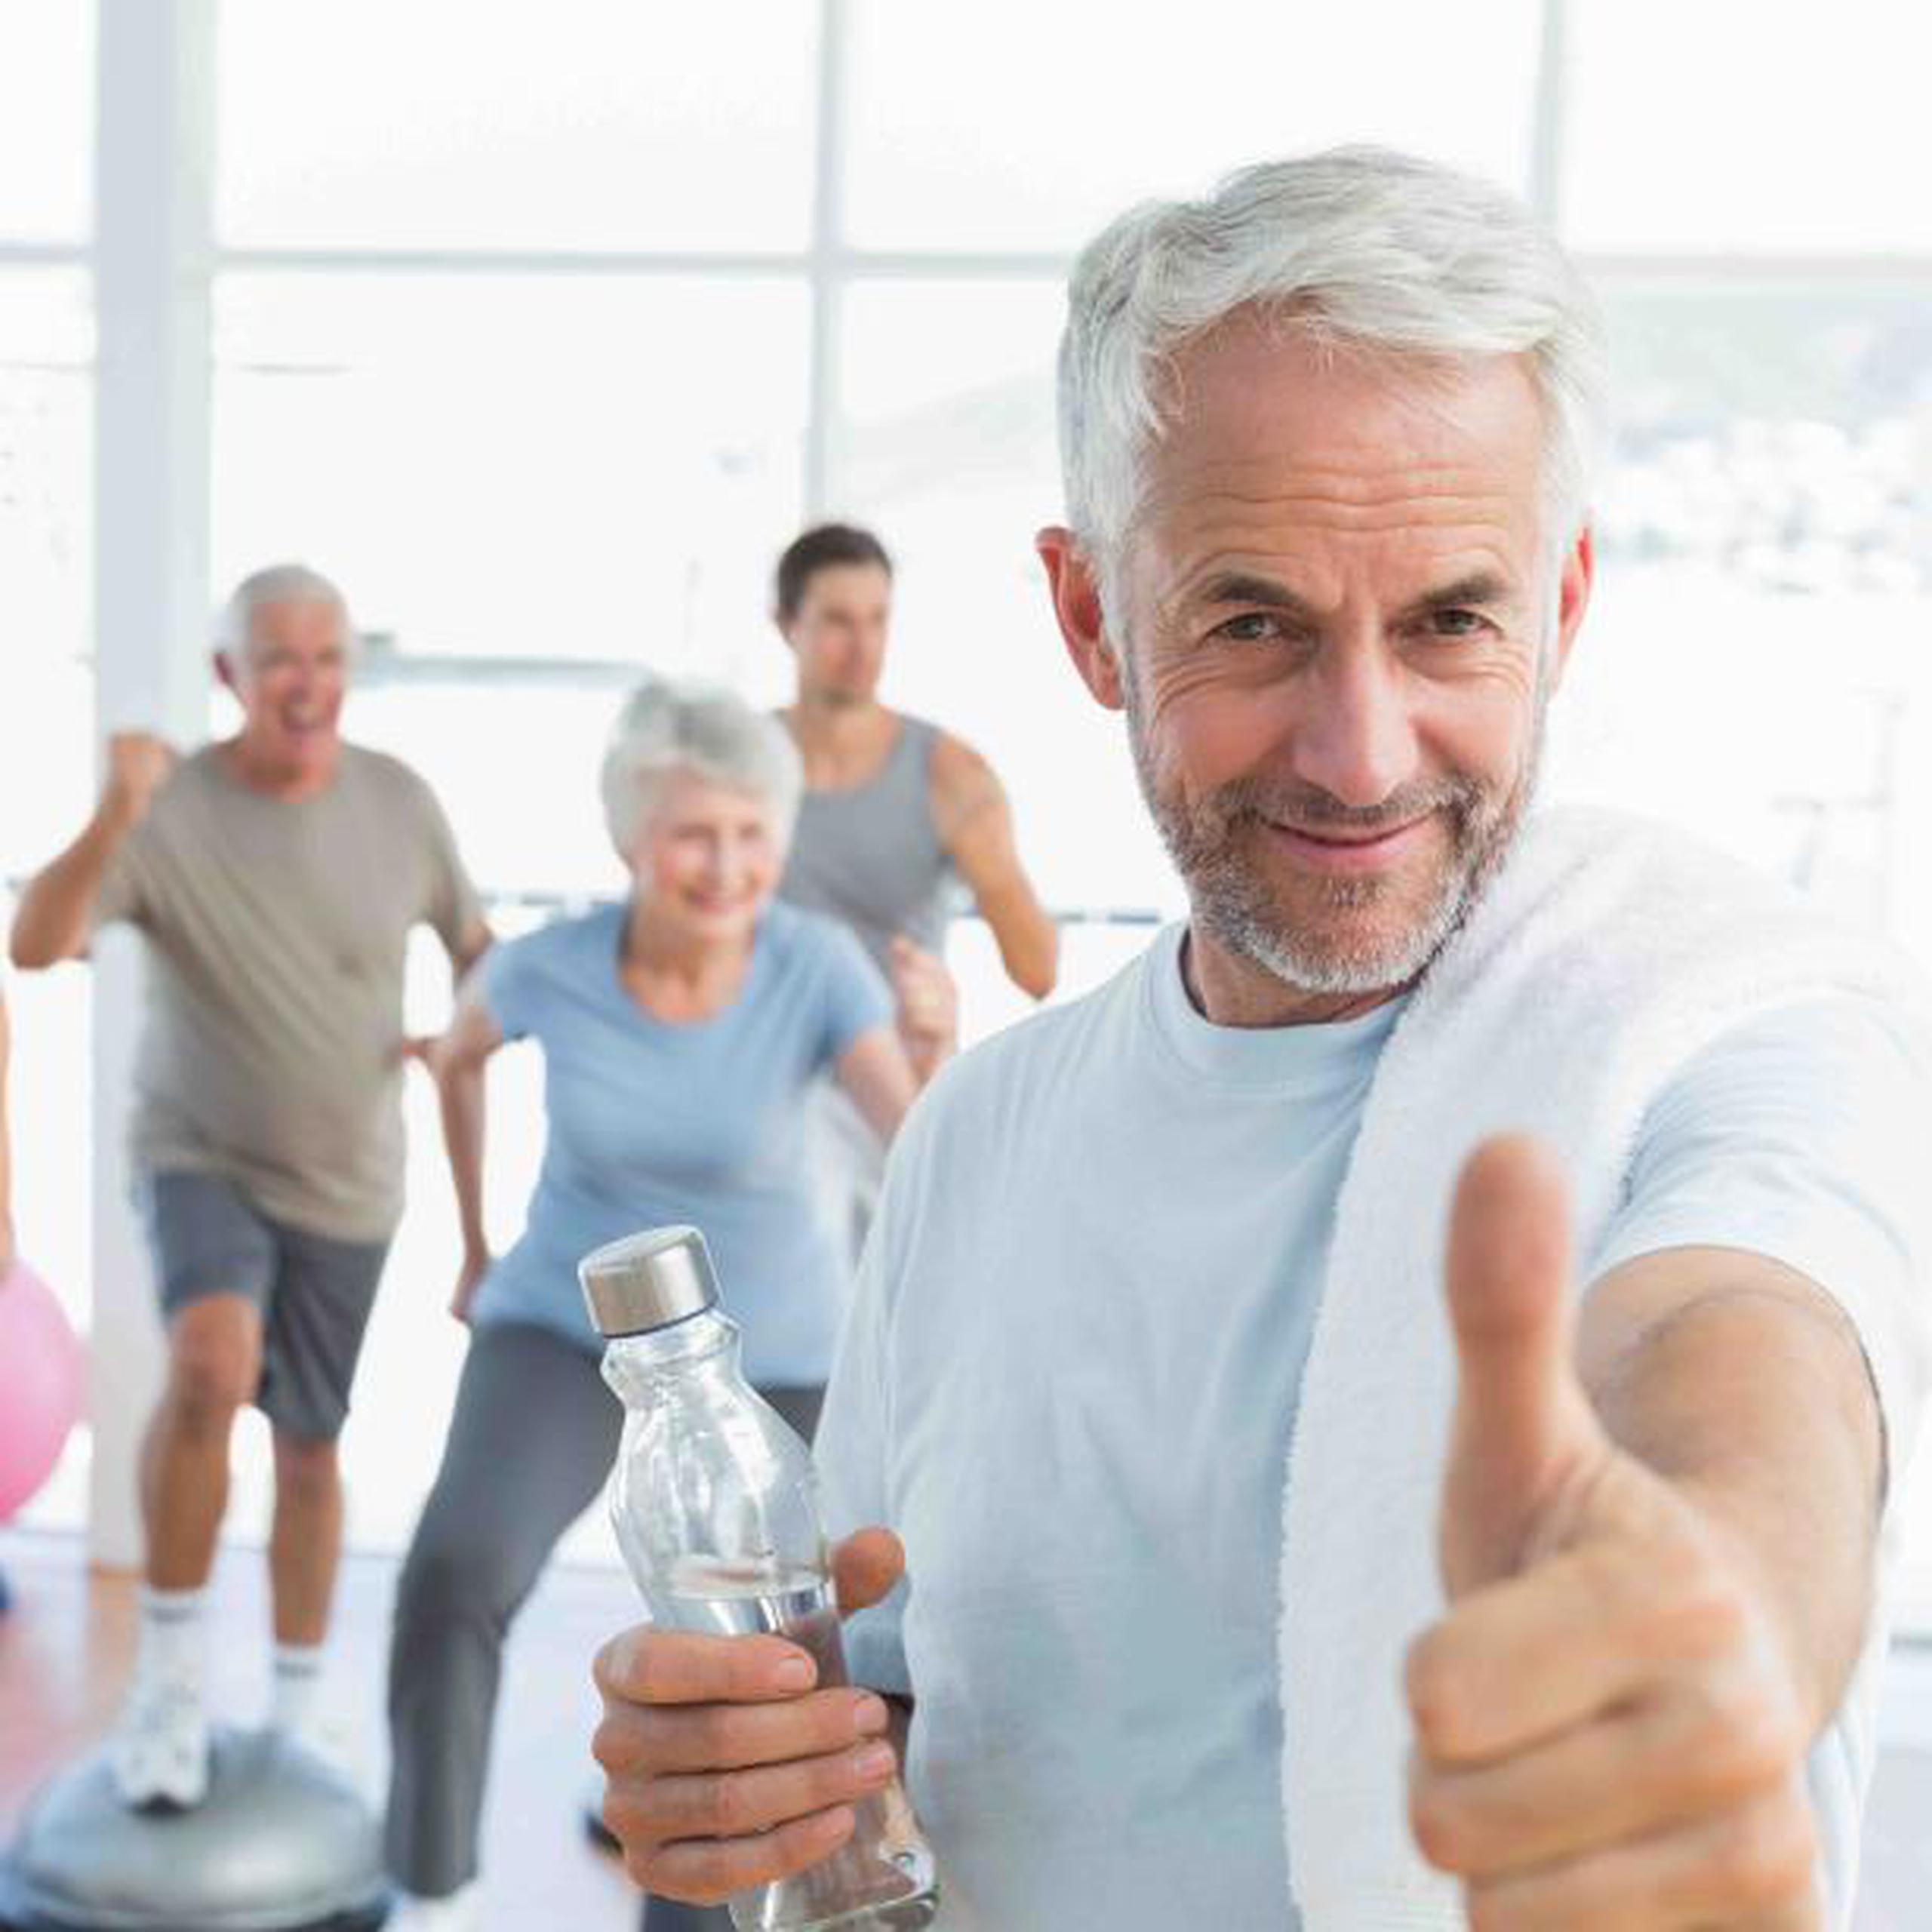 Entre los beneficios, el ejercicio reduce el riesgo de enfermedades cardiovasculares, previene contra el cáncer y juega un papel crucial en la lucha contra la diabetes o la obesidad.  (Shutterstock)